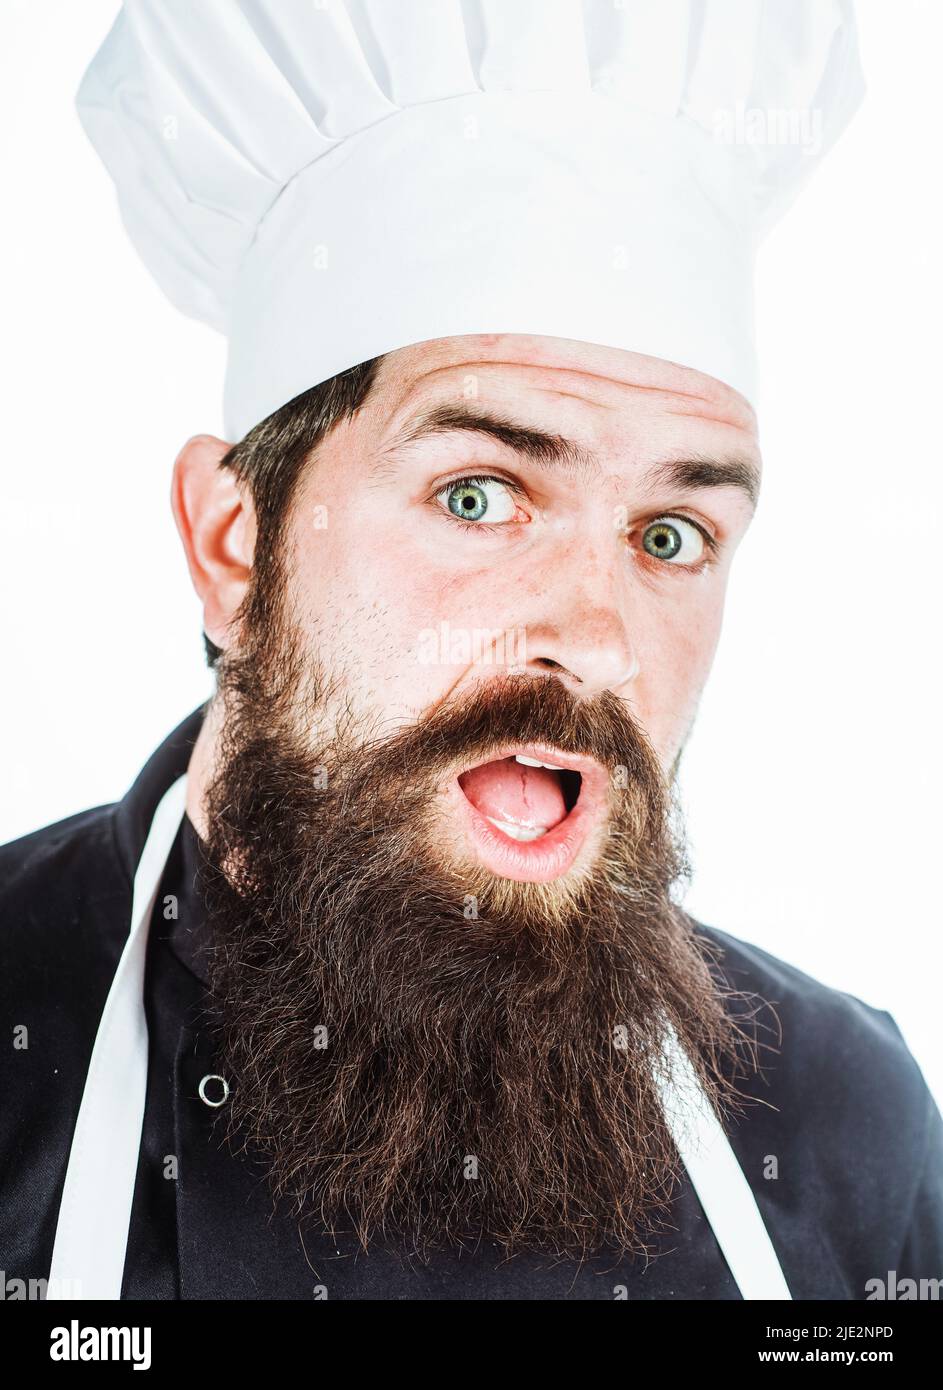 Überraschte den bärtigen Koch in Uniform. Kochen. Emotionen. Porträt eines professionellen männlichen Kochs oder Bäckers. Stockfoto